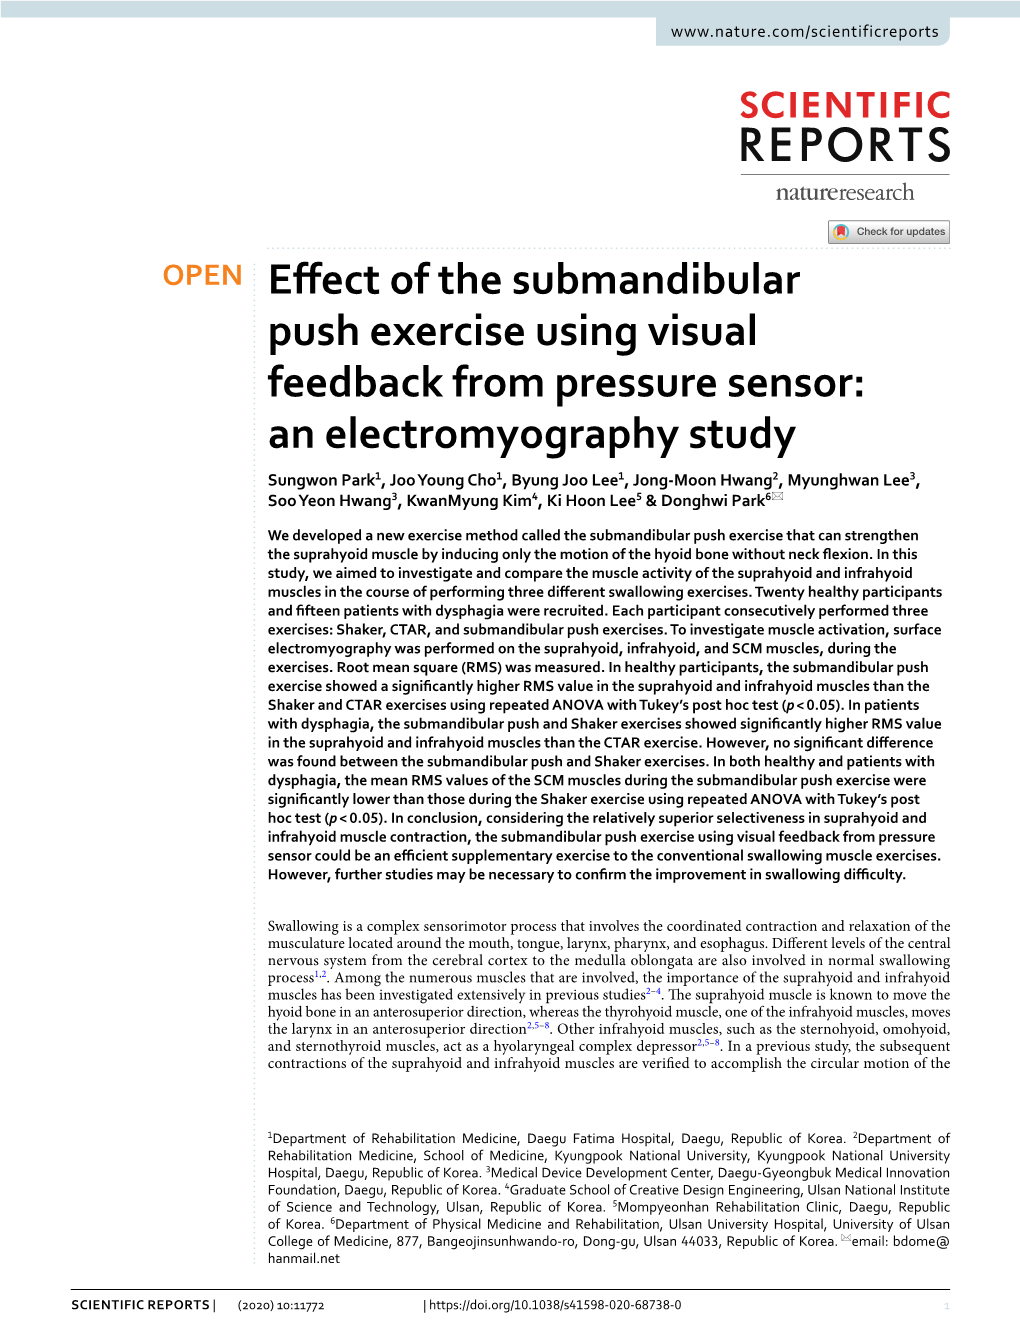 Effect of the Submandibular Push Exercise Using Visual Feedback From